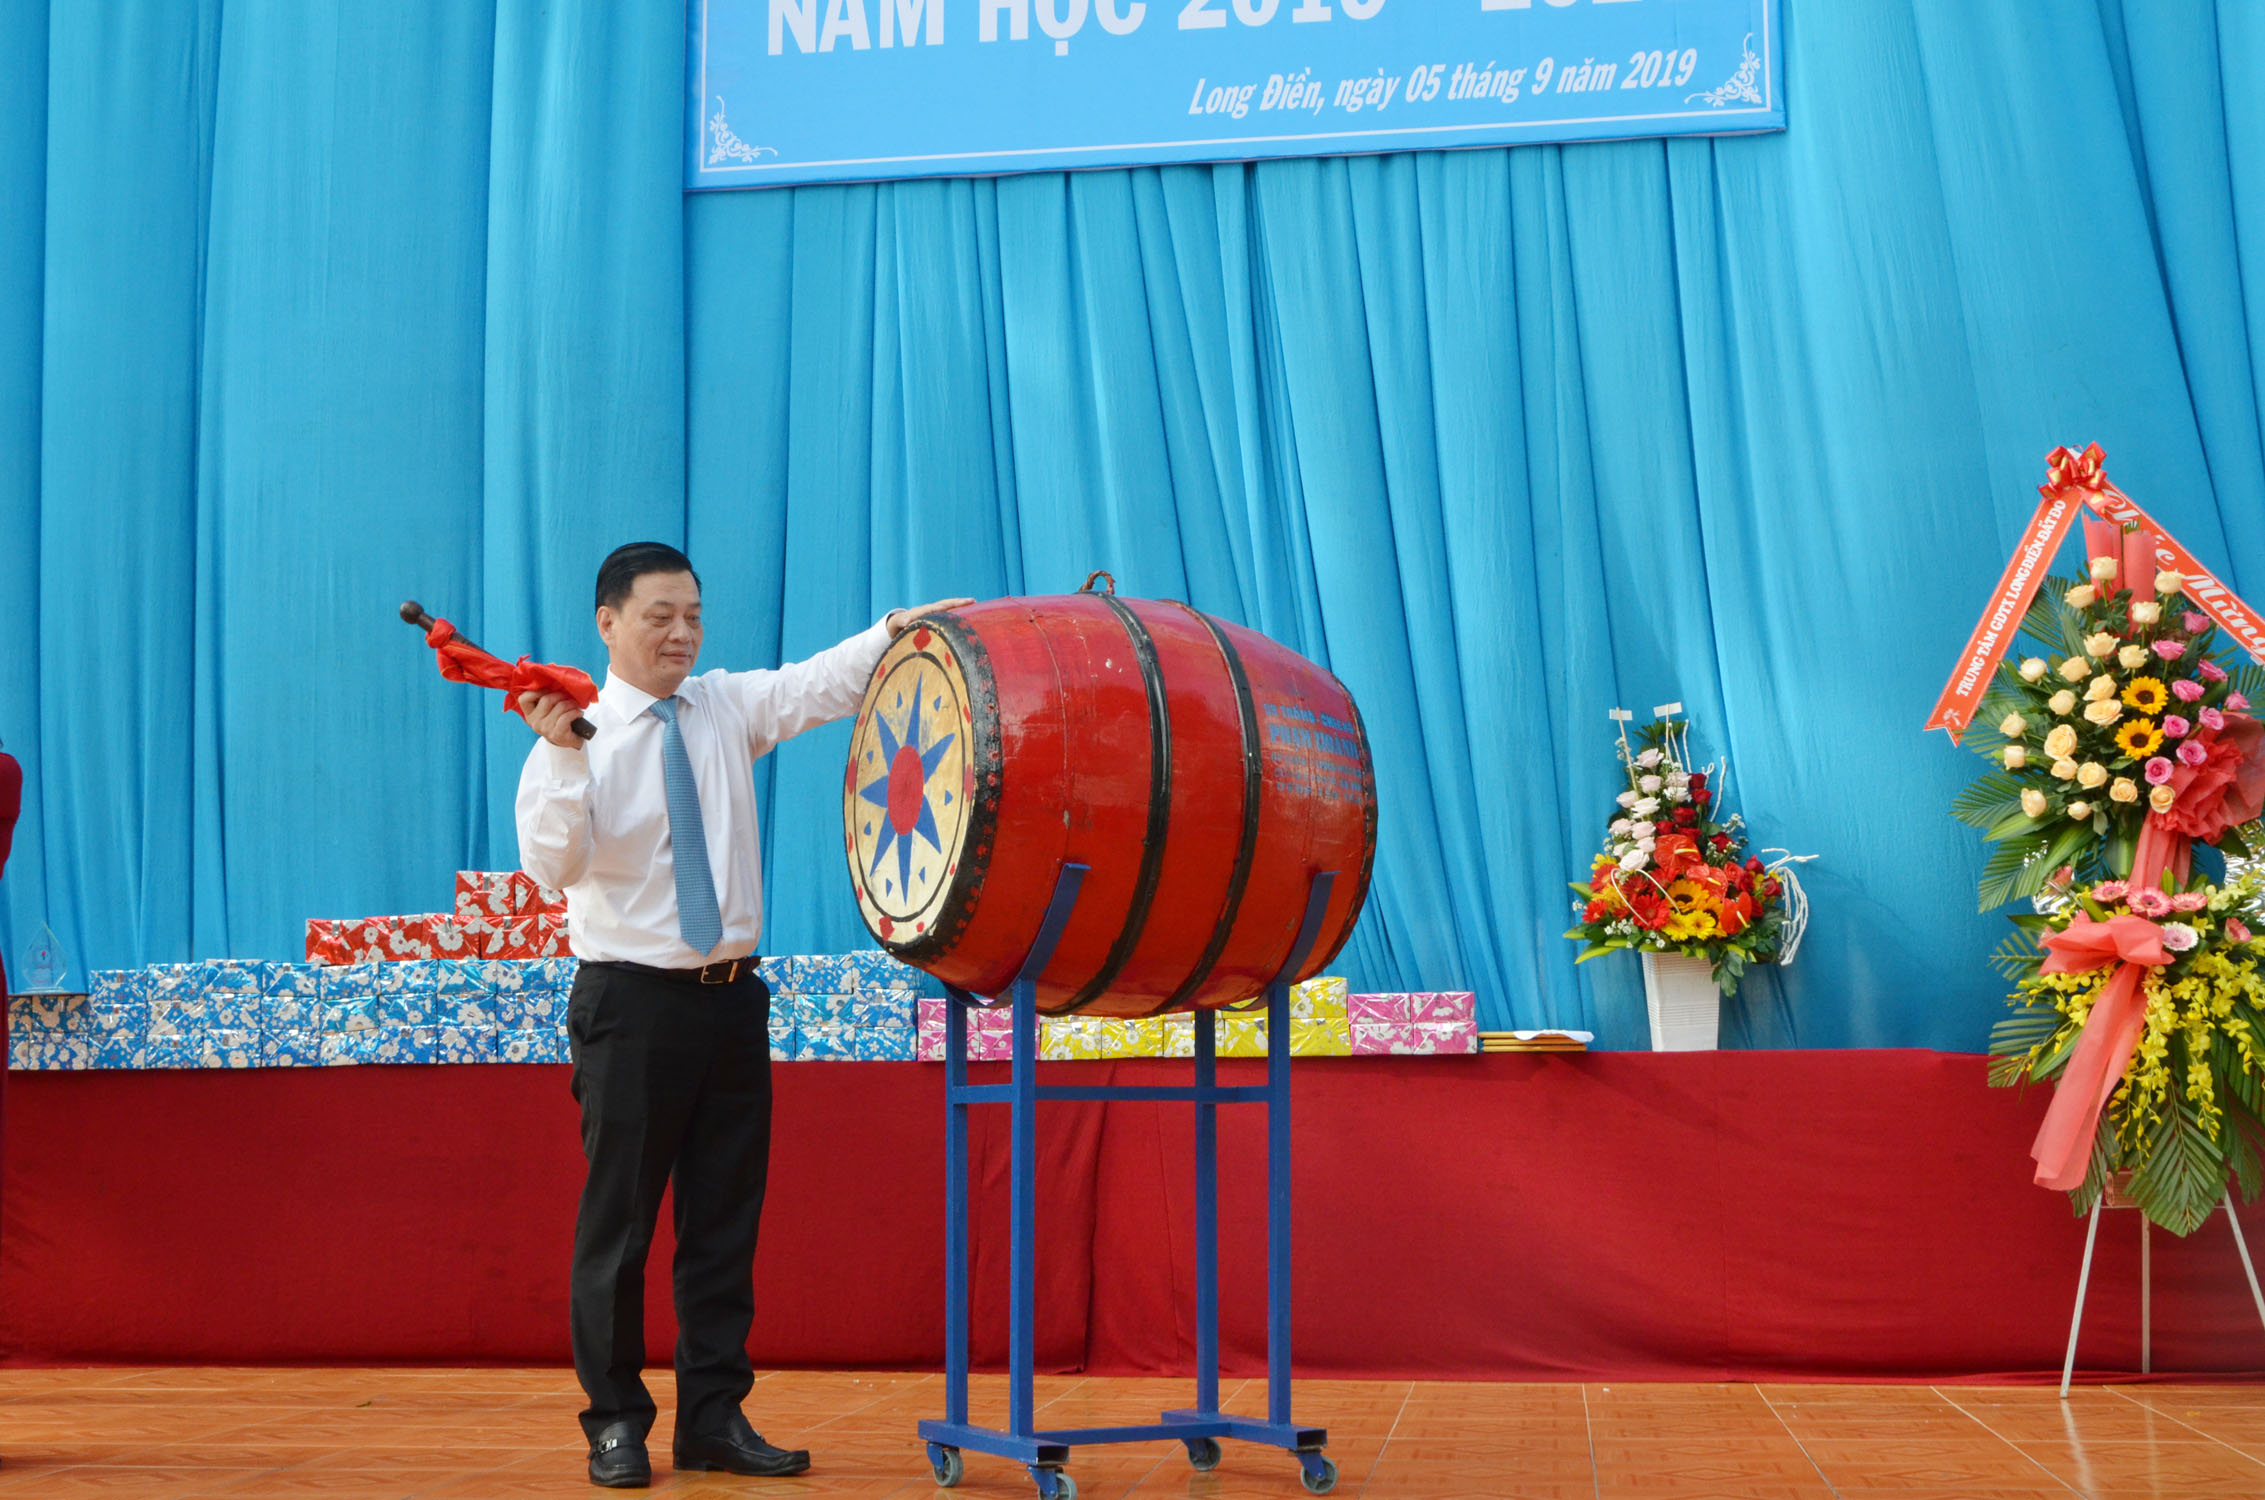 Ông Nguyễn Thành Long, Ủy viên Ban Thường vụ Tỉnh ủy. Quyền Chủ tịch UBND tỉnh đánh trống khai giảng năm học mới tại Trường THPT Trần Văn Quan (huyện Long Điền).